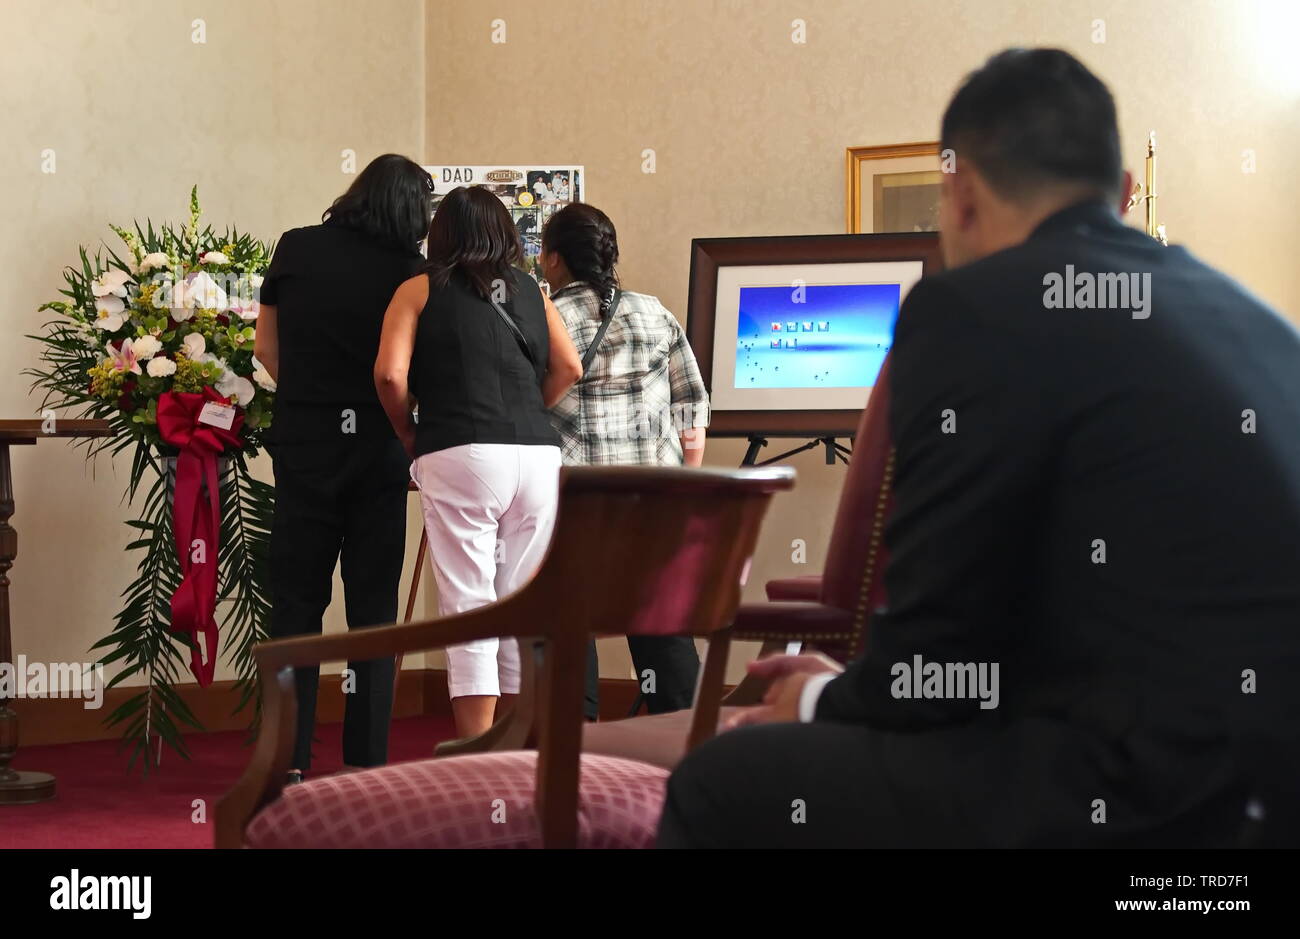 New York City, NY / USA - 24 juin 2016 : un groupe de femmes se rappeler au sujet de l'être aimé en tant que membre de la famille regarde solennellement Banque D'Images